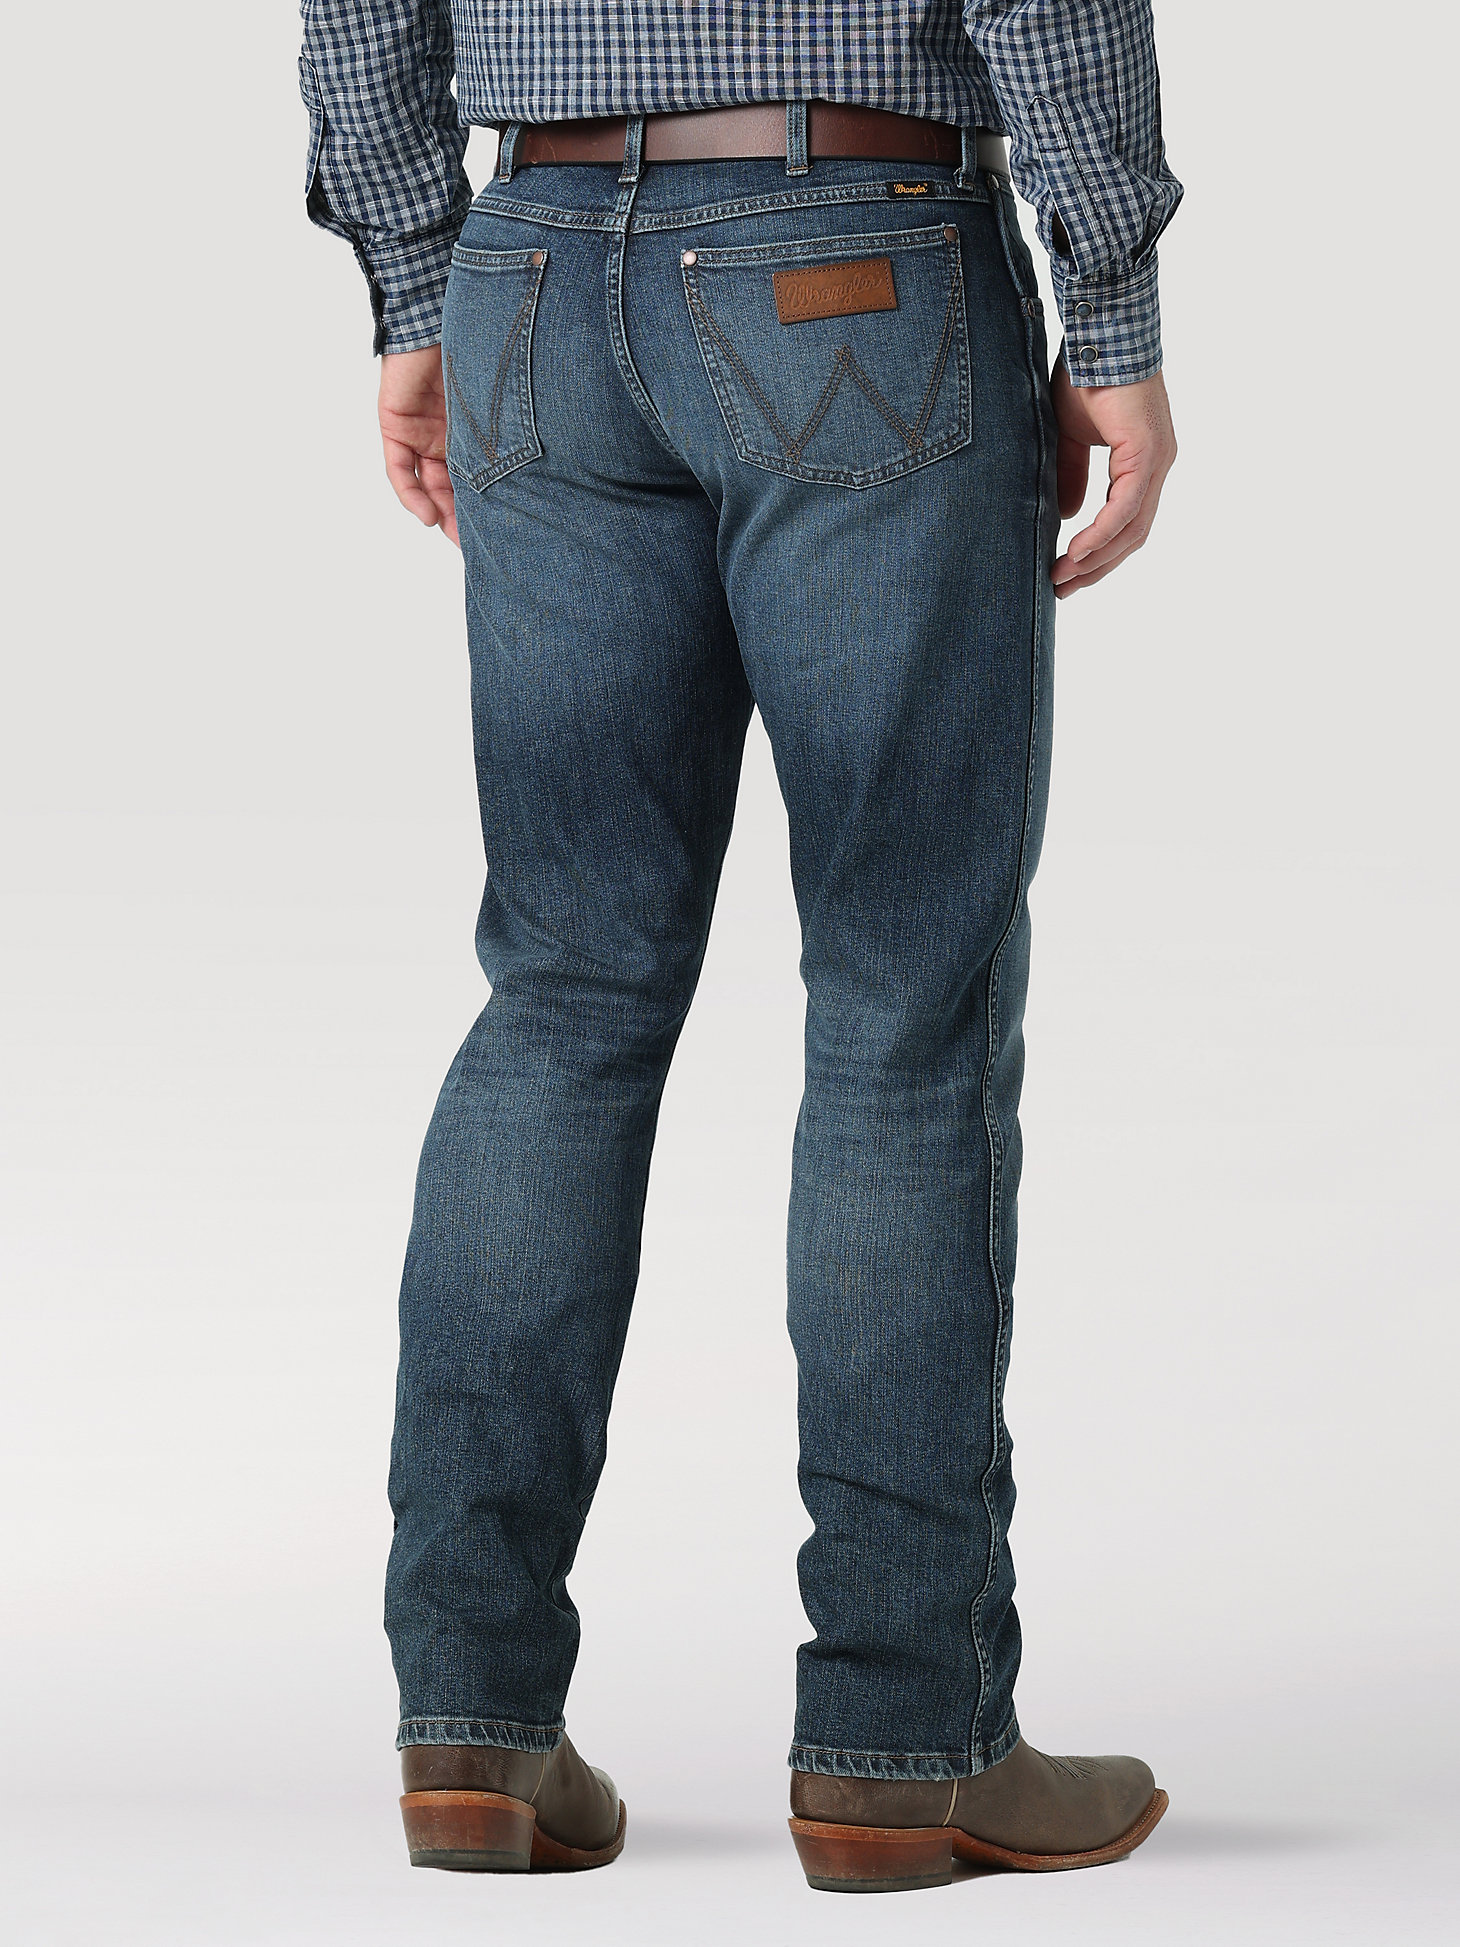 The Wrangler Retro® Premium Jean: Men's Slim Straight in Enerjean alternative view 2